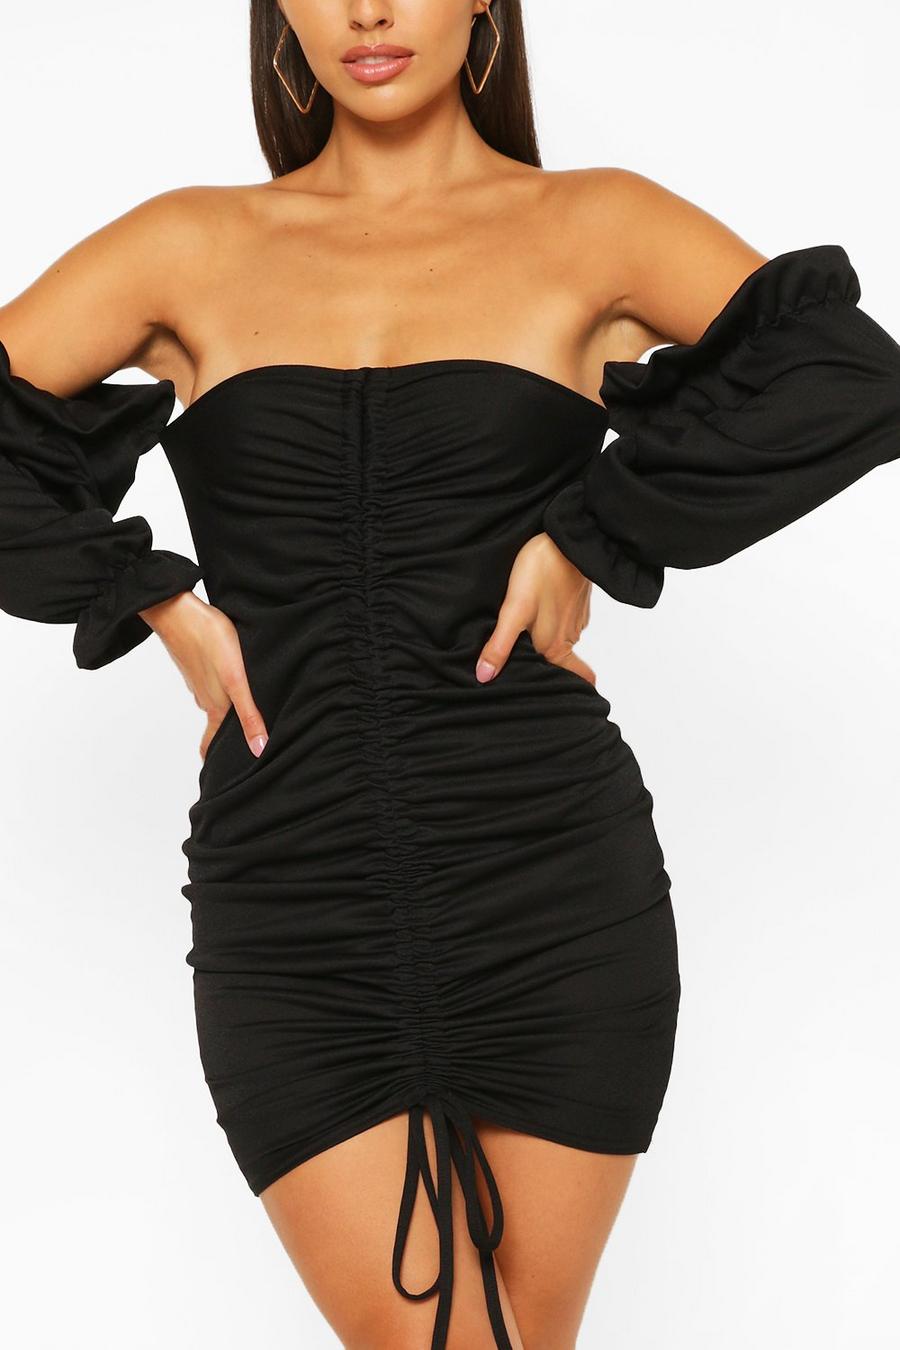 שחור שמלת מיני כתפיים חשופות וחזית קפלים, פטיט image number 1